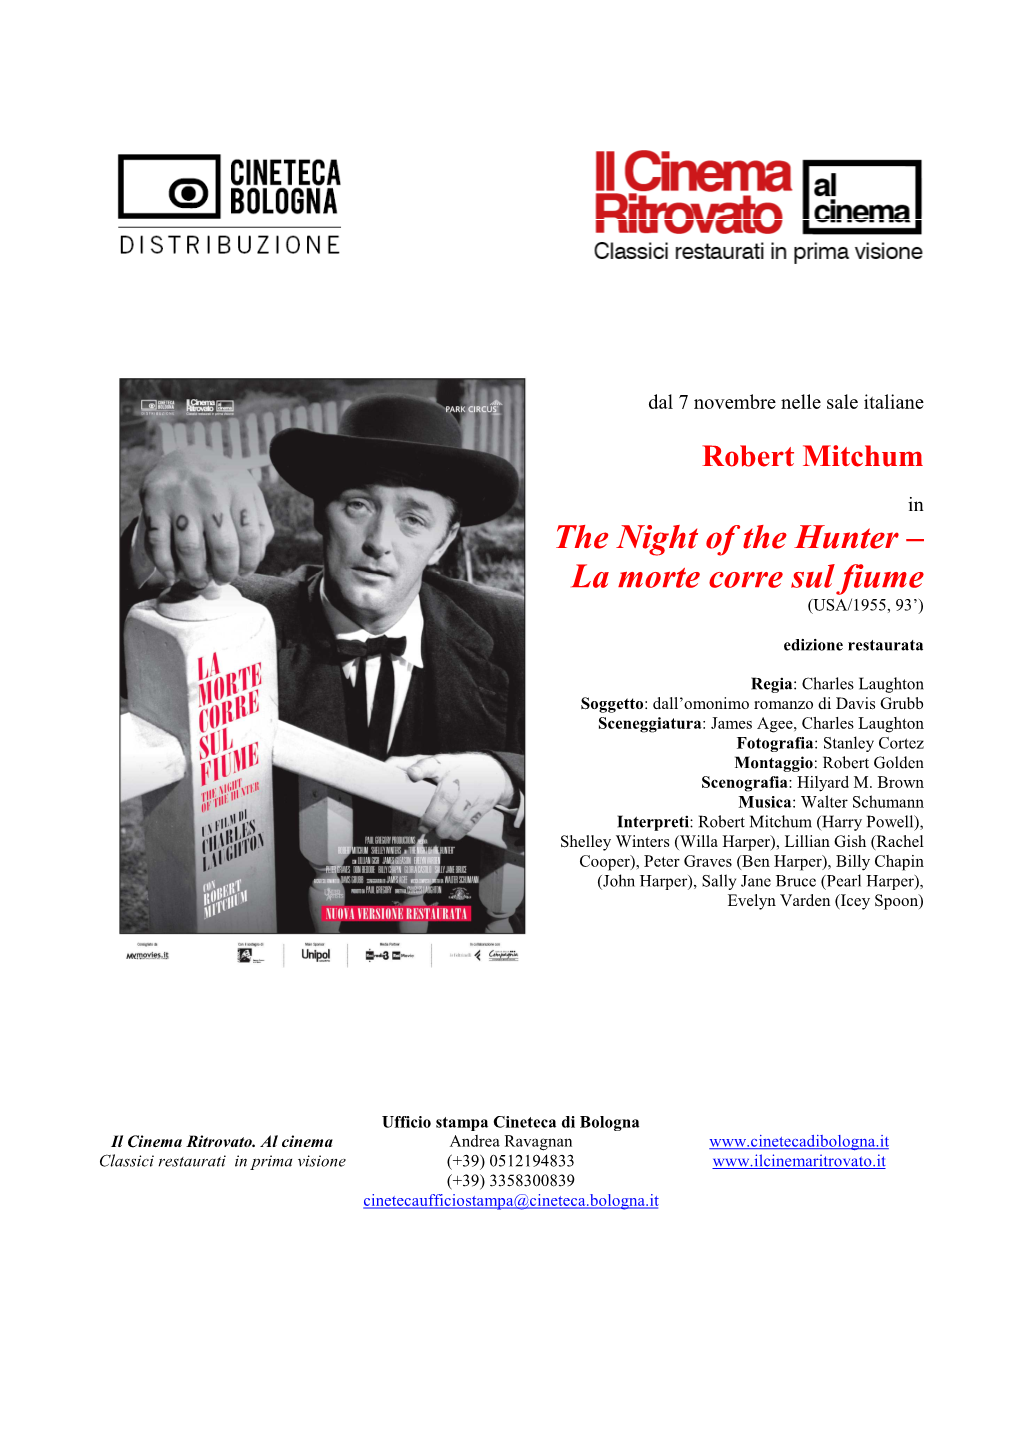 The Night of the Hunter – La Morte Corre Sul Fiume (USA/1955, 93’)